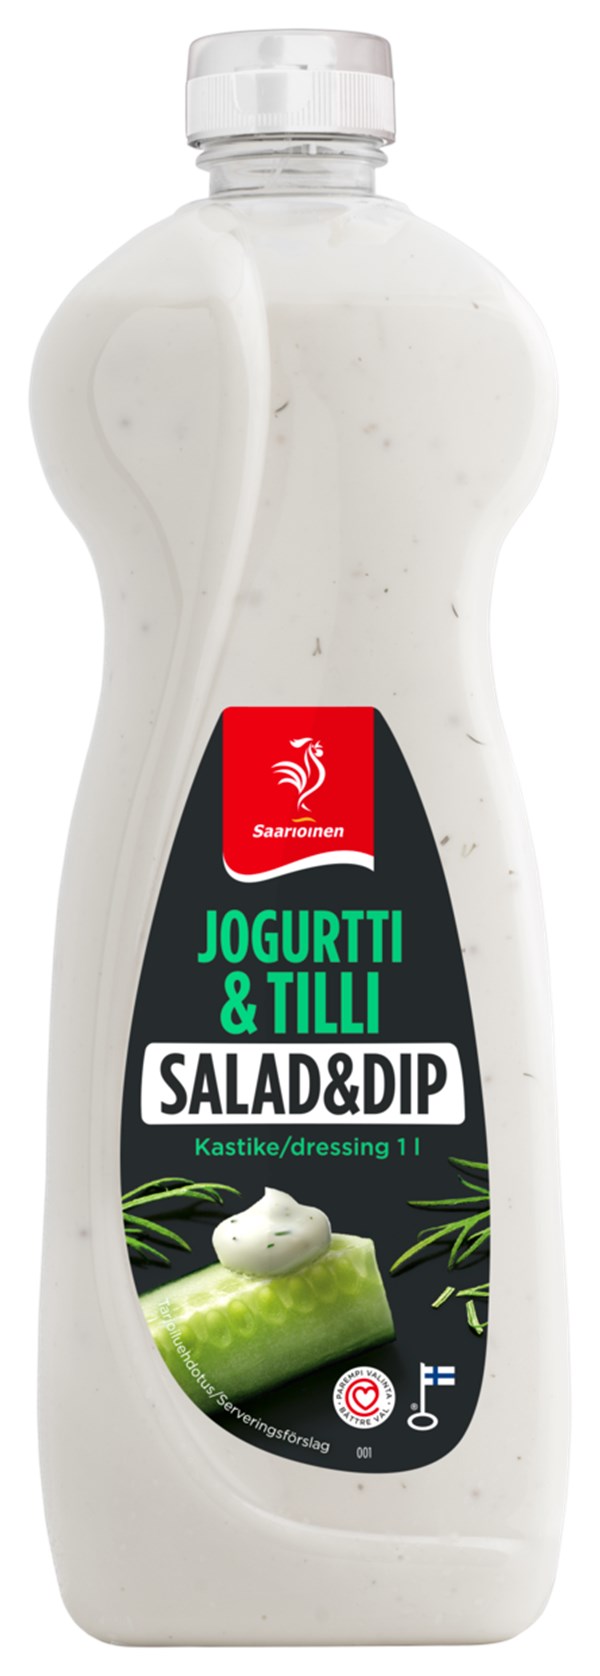 Jogurtti & tilli salaatti- ja dippikastike 1 L